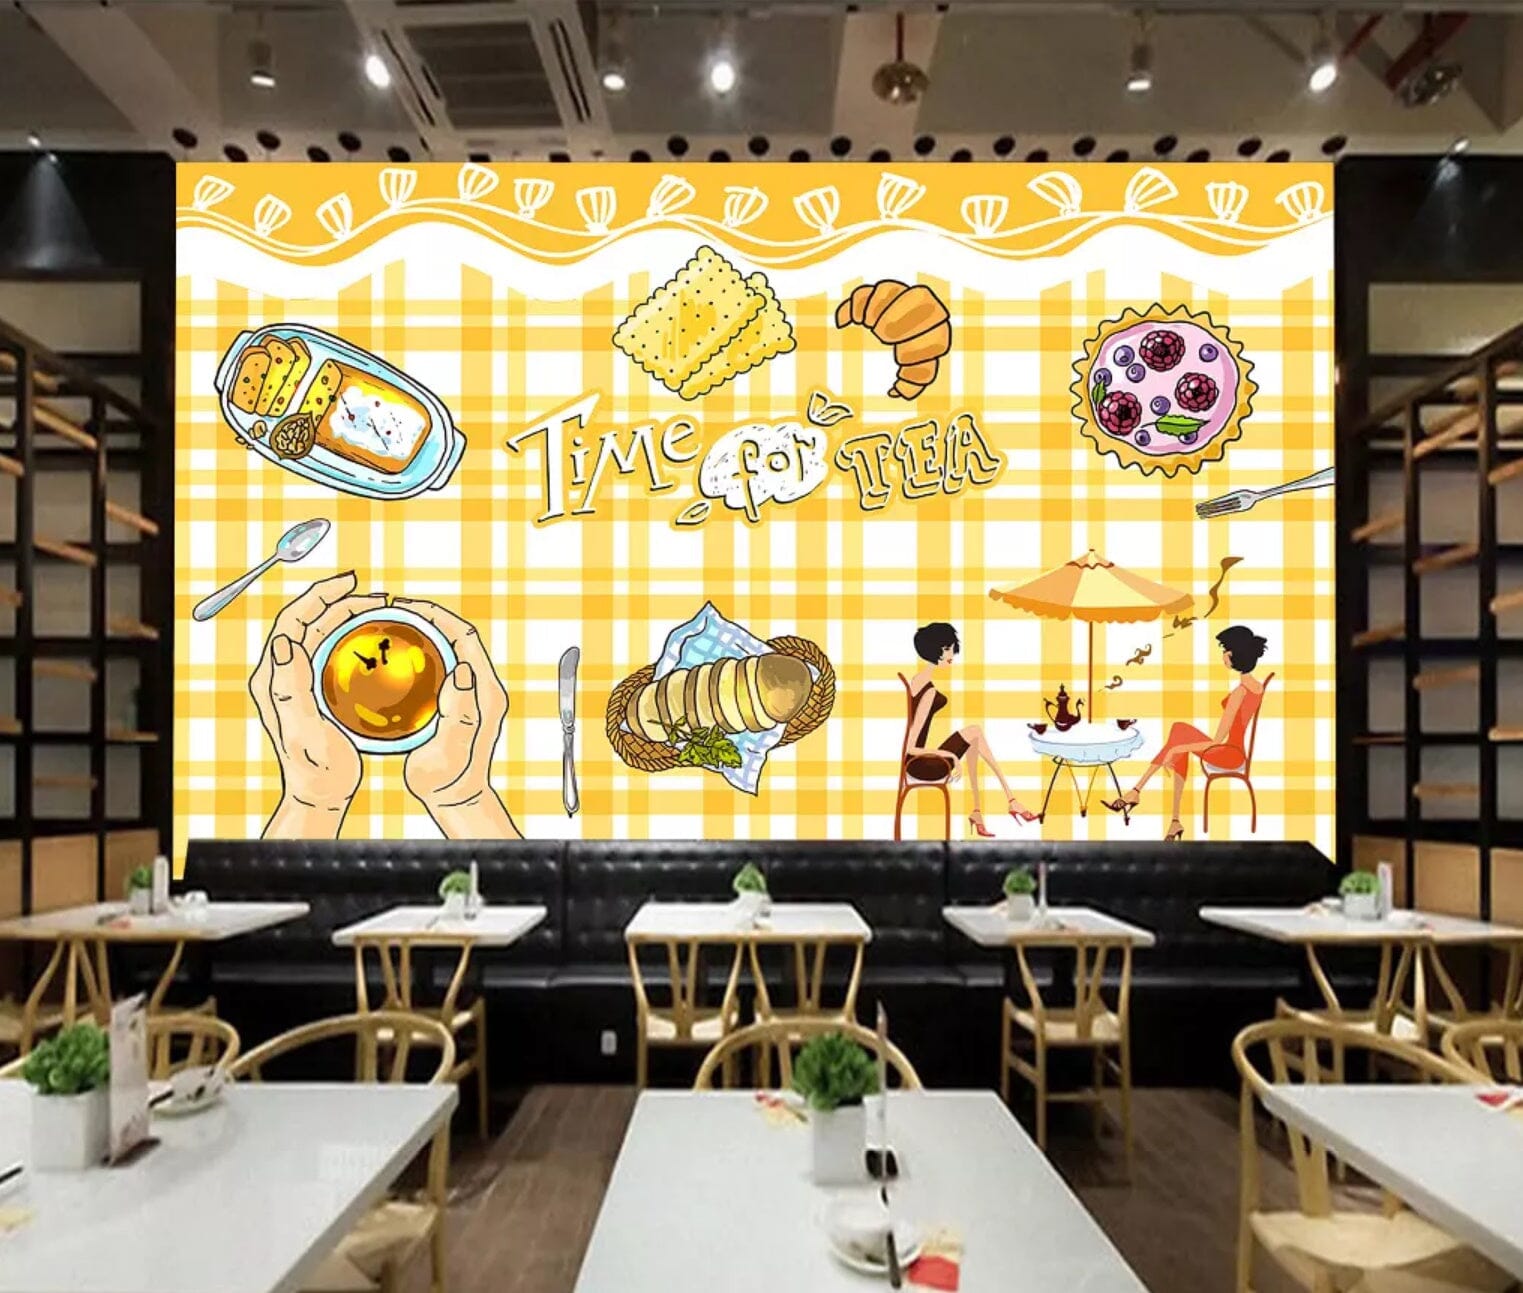 3D Good Food 2407 Wall Murals Wallpaper AJ Wallpaper 2 